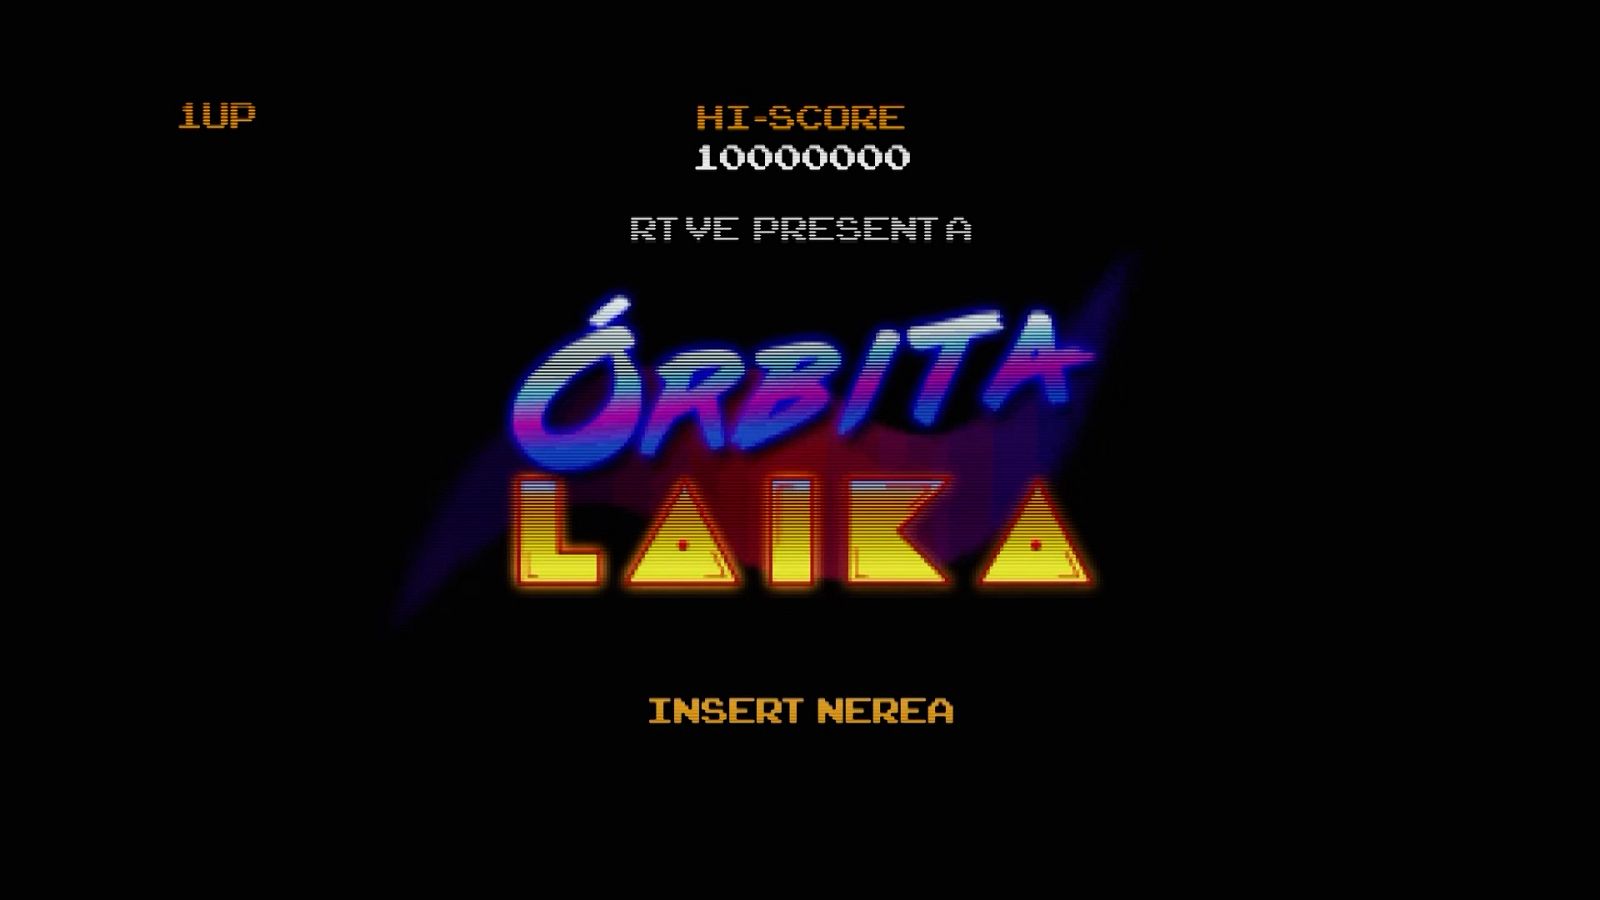 Órbita Laika - Tecnología con Nerea Luis Mingueza - Los ordenadores de los 80